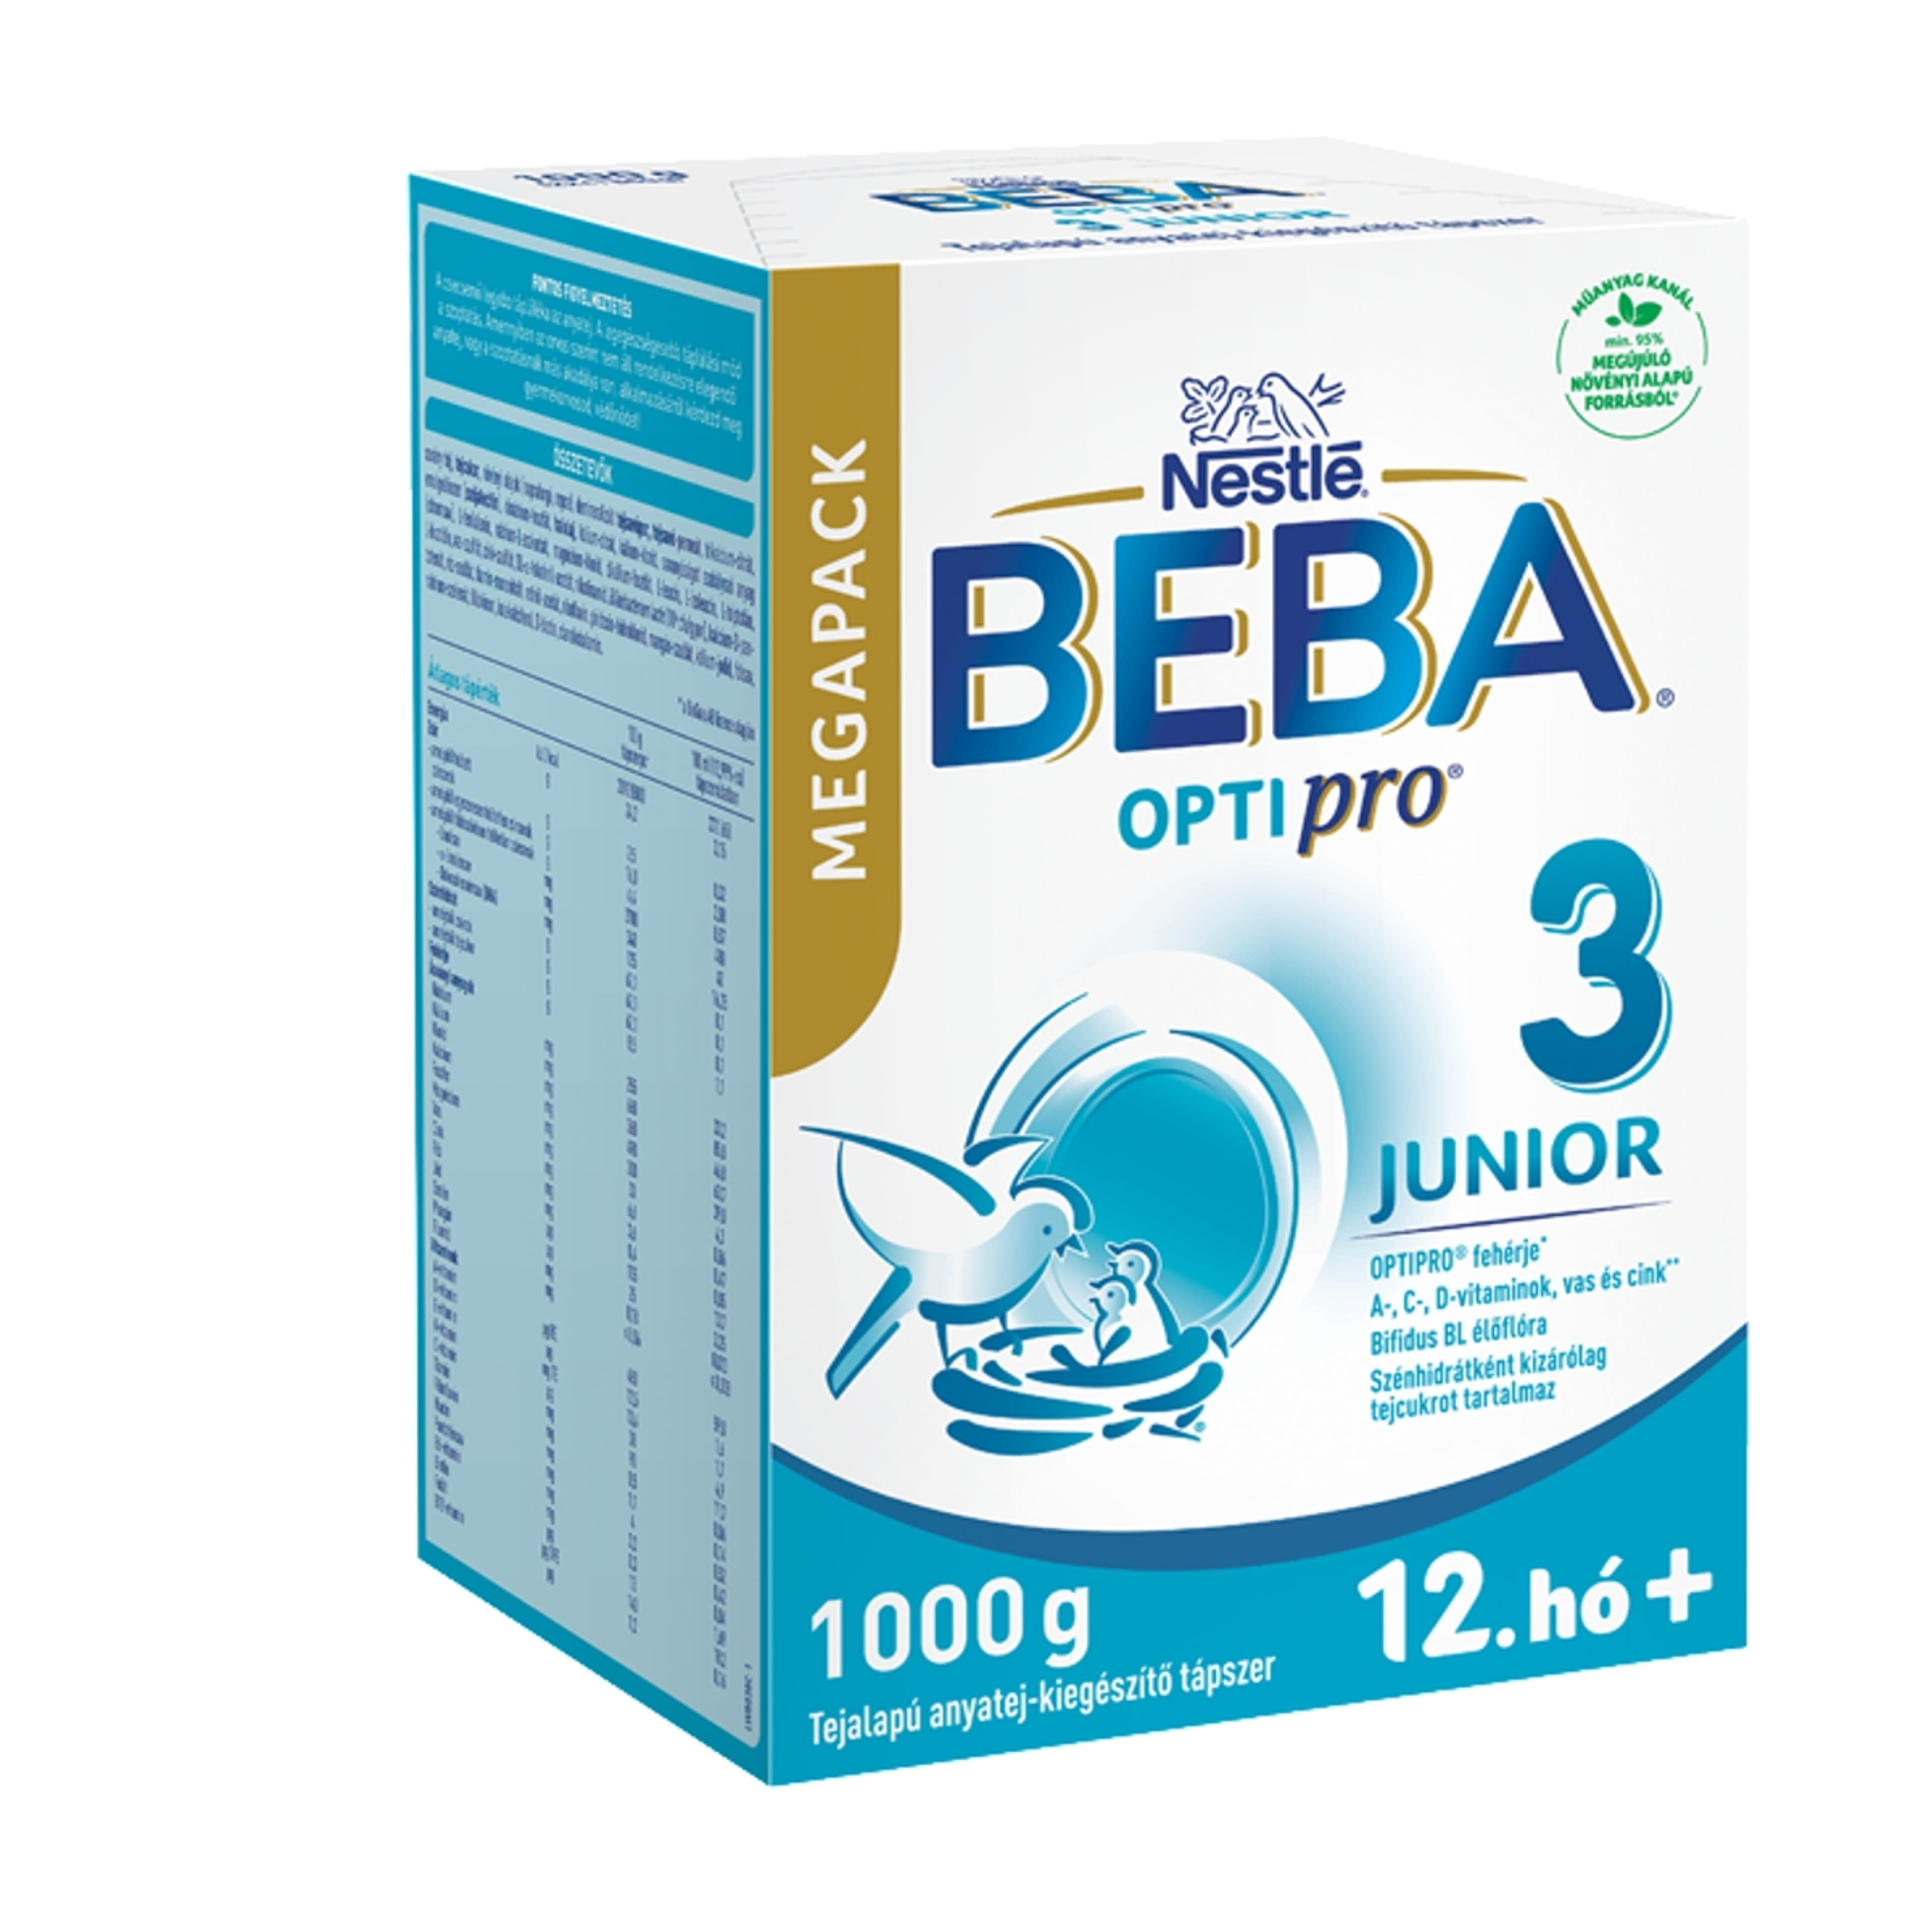 Beba Optipro 3 Junior tejalapú anyatej-kiegészítő tápszer 12. hónapos kortól - 1000 g-2